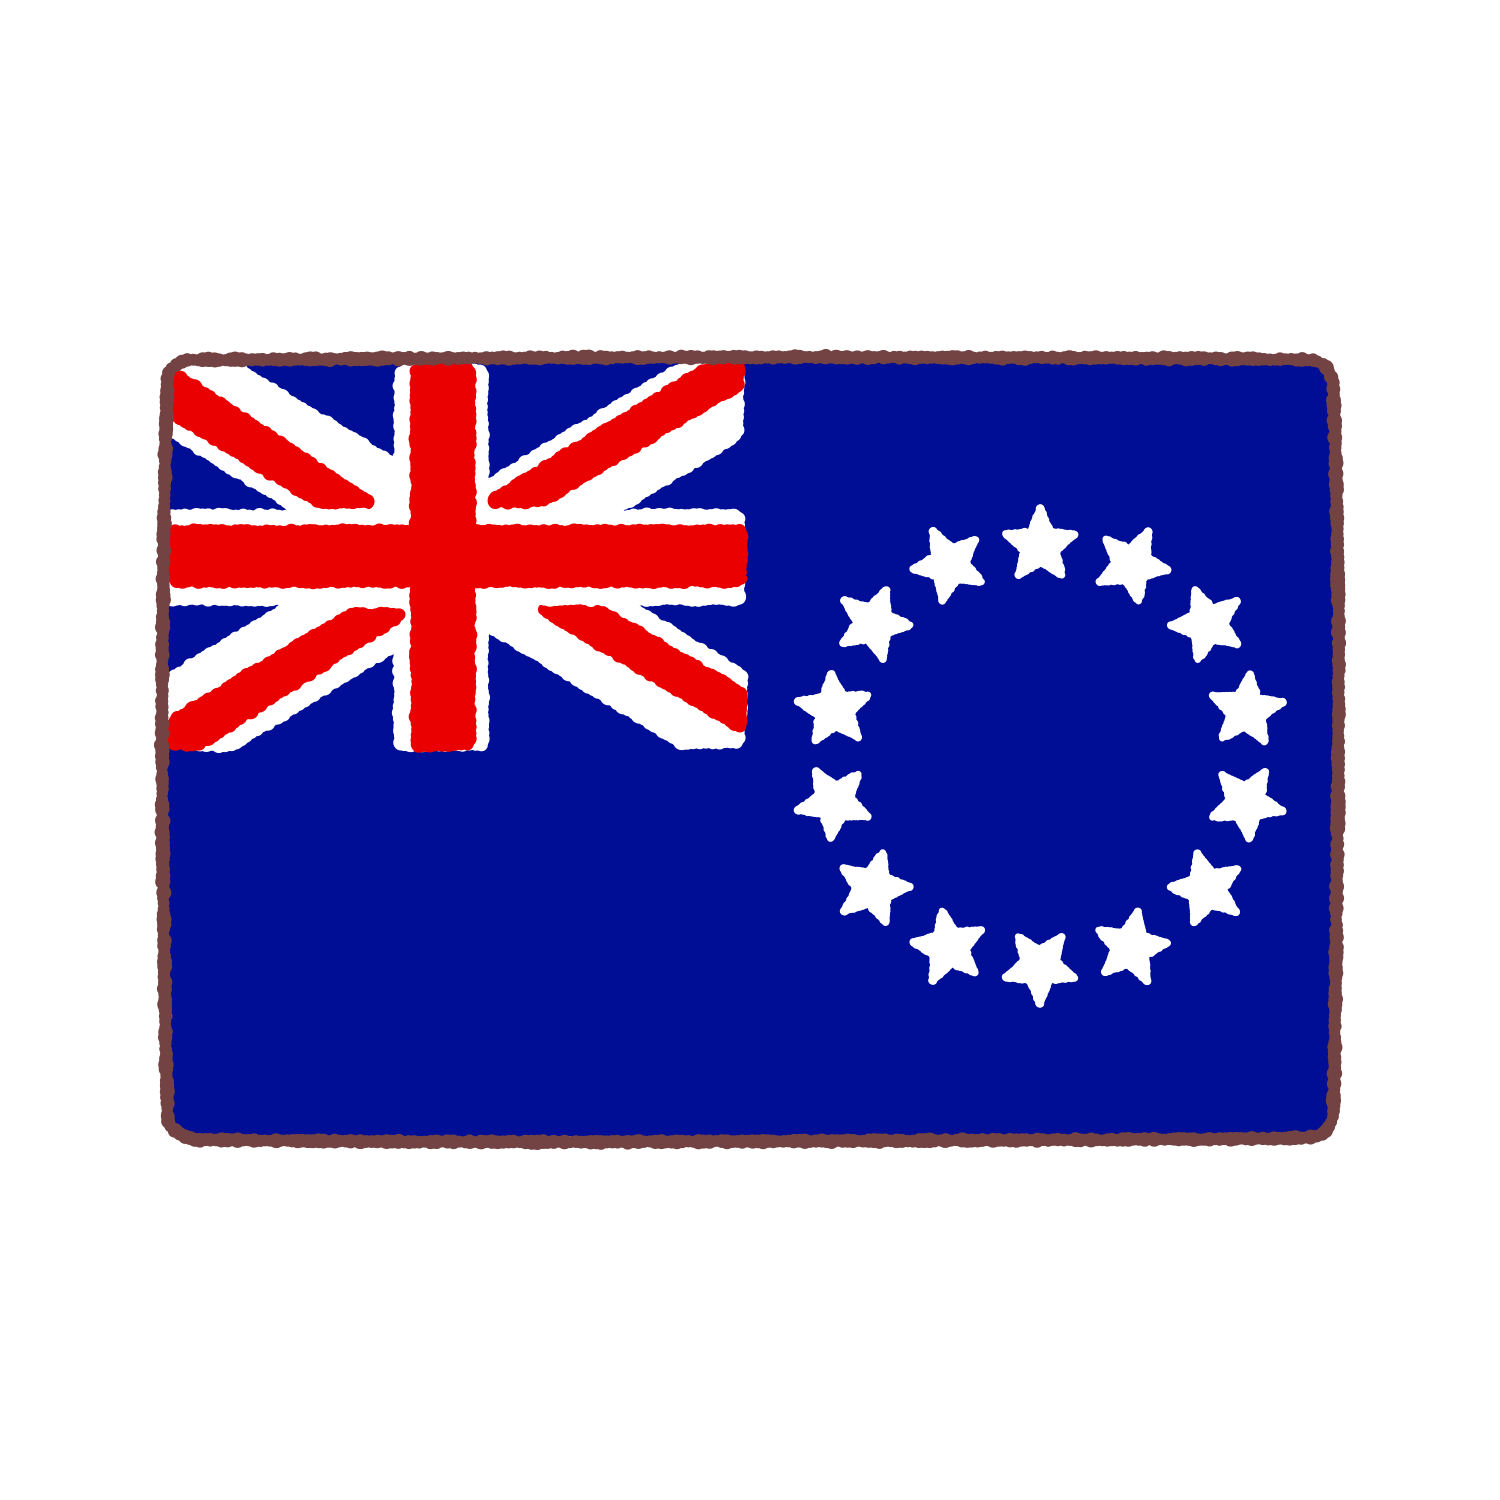 クック諸島国旗のイラスト